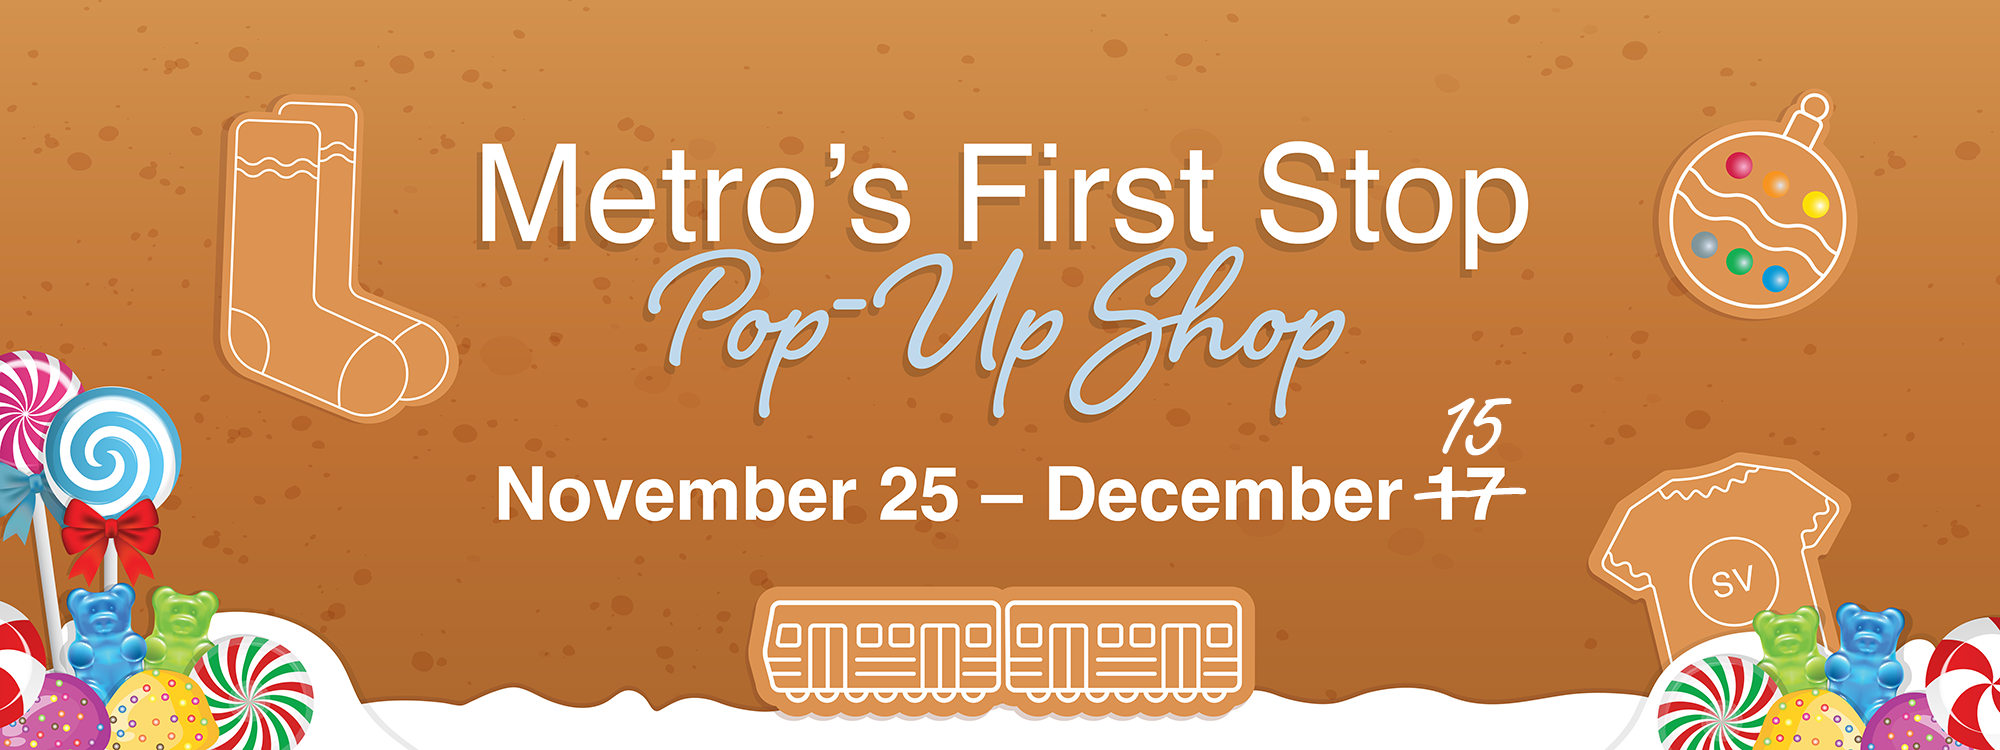 Metro's First Stop Pop-up Shop Dec 15